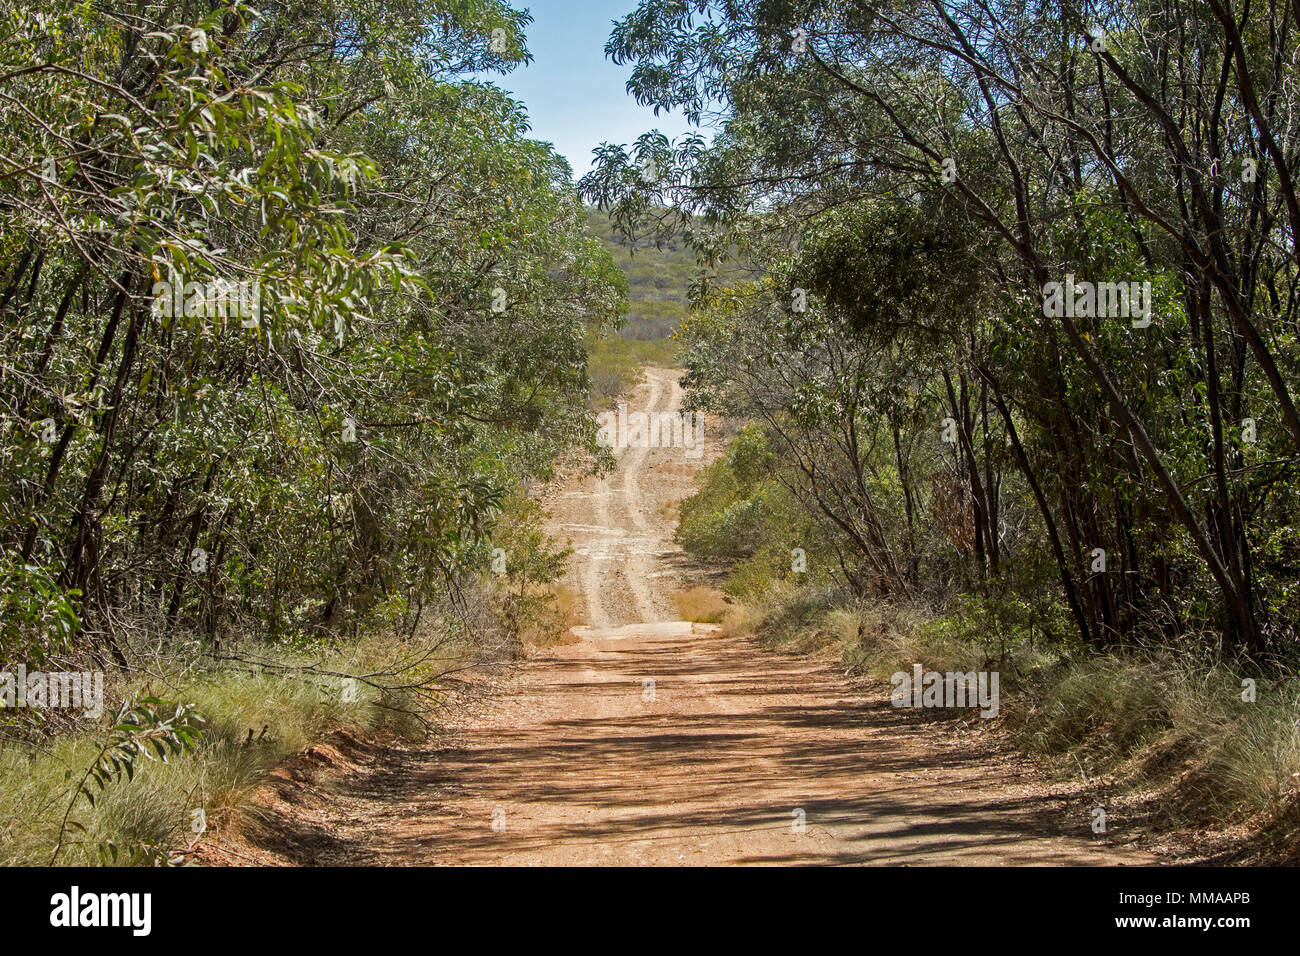 Paysage avec des terres boisées d'eucalyptus rompu par chemin de terre étroit dans Minerva Hills National Park, près de Springsure, Queensland Australie Banque D'Images